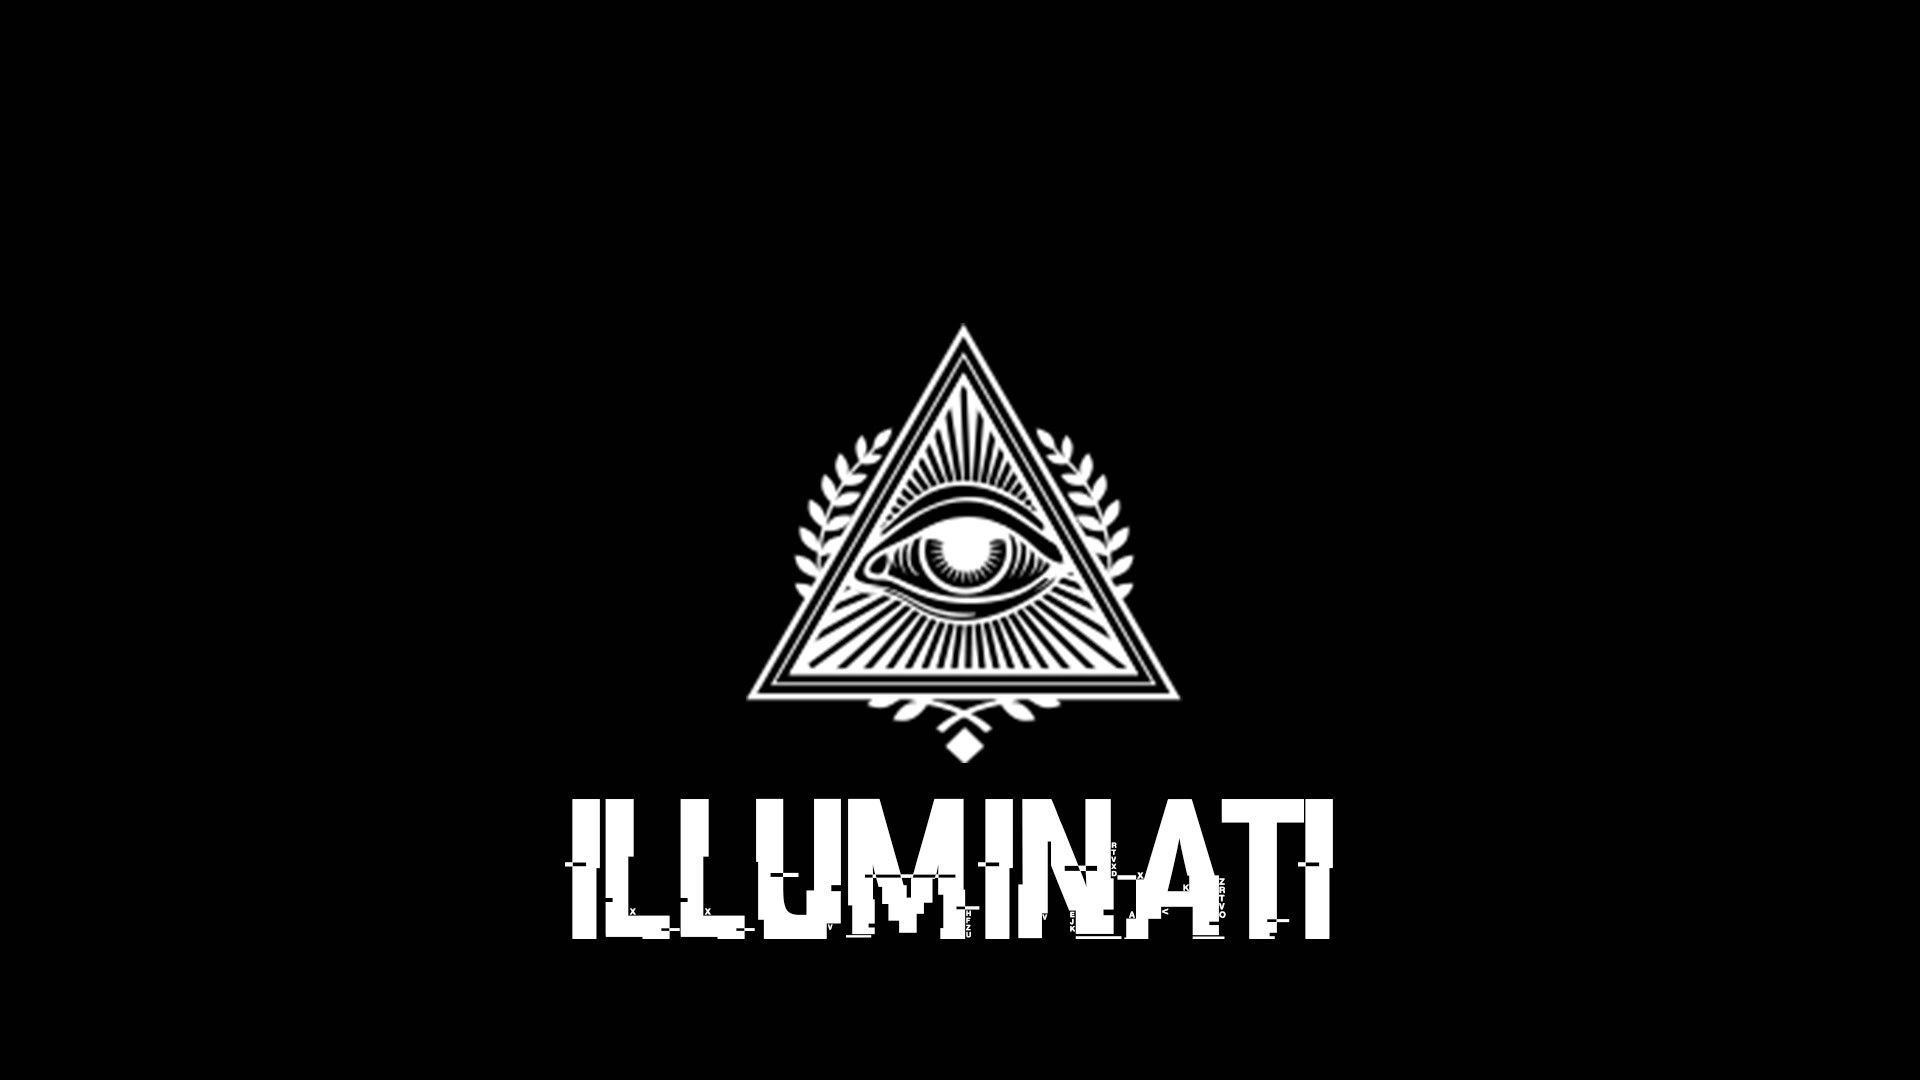 Mejores fondos de pantalla de Illuminati - Top gratis Mejores fondos de Illuminati